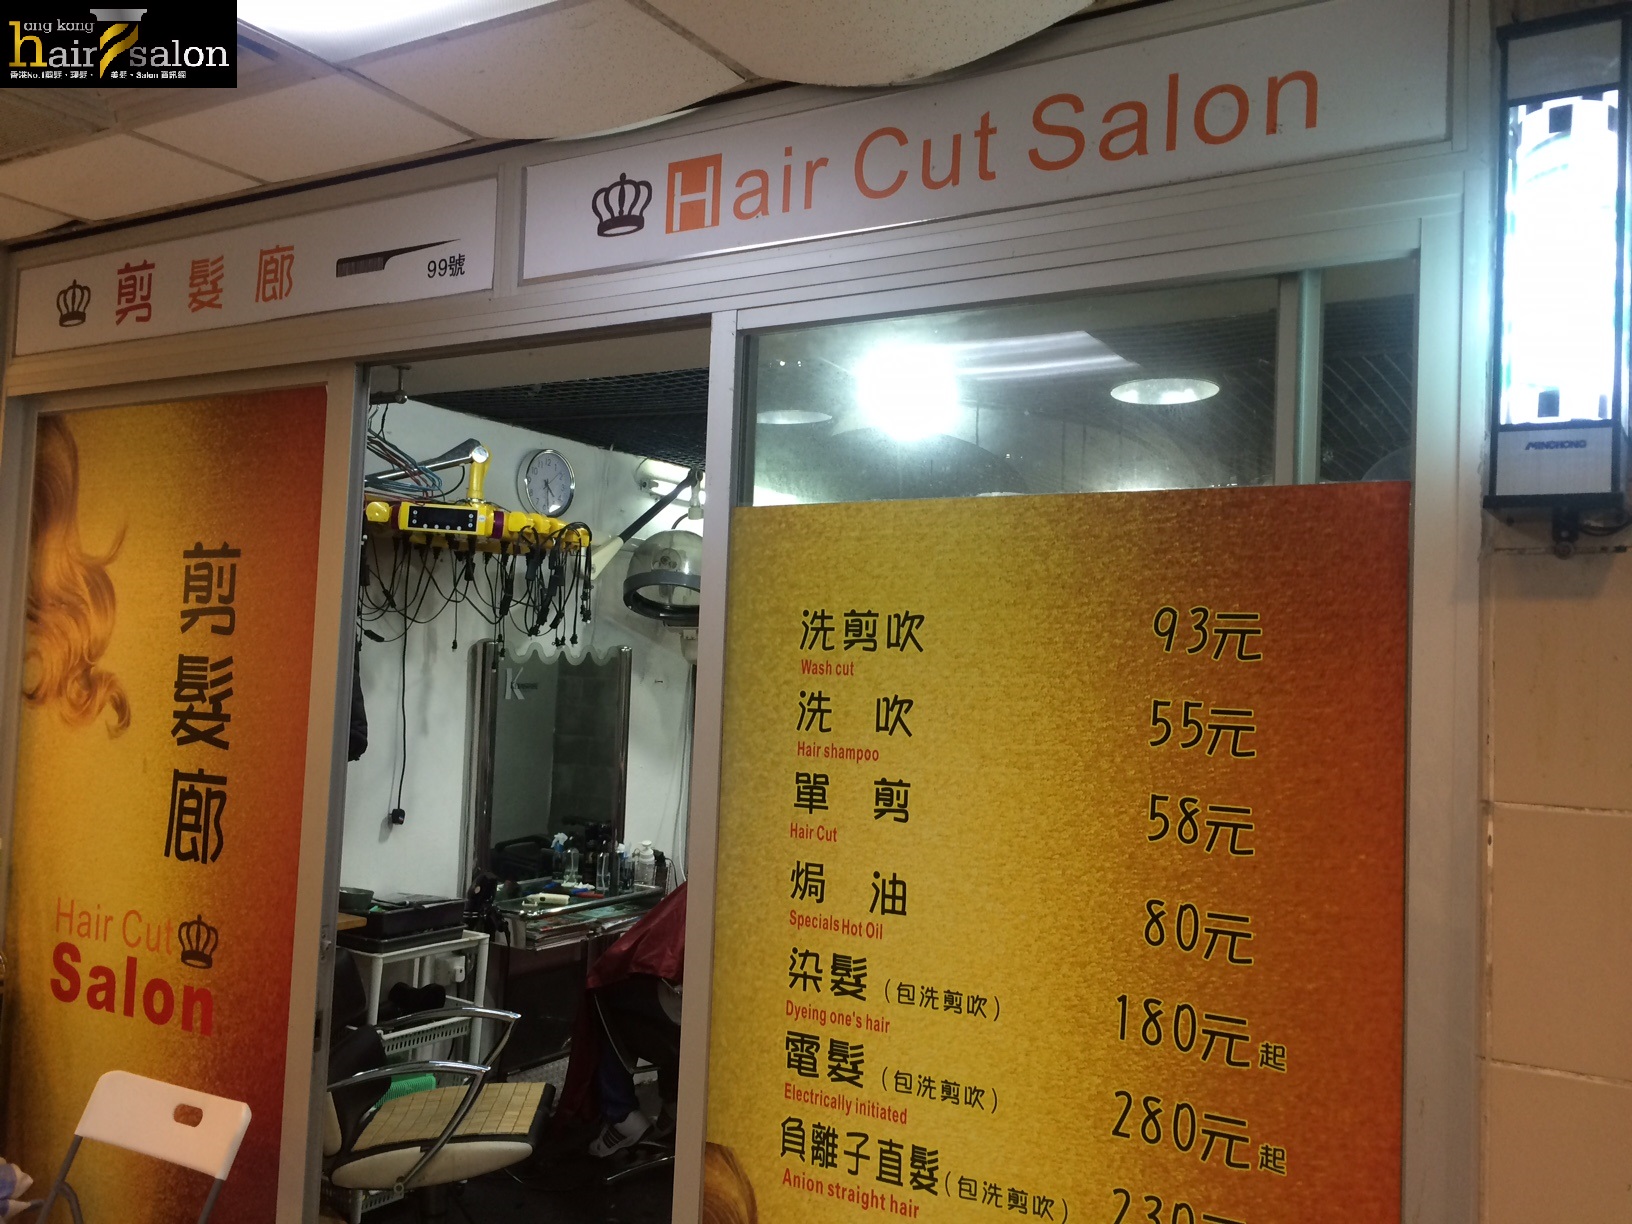 髮型屋: 剪髮廊 Hair Cut Salon